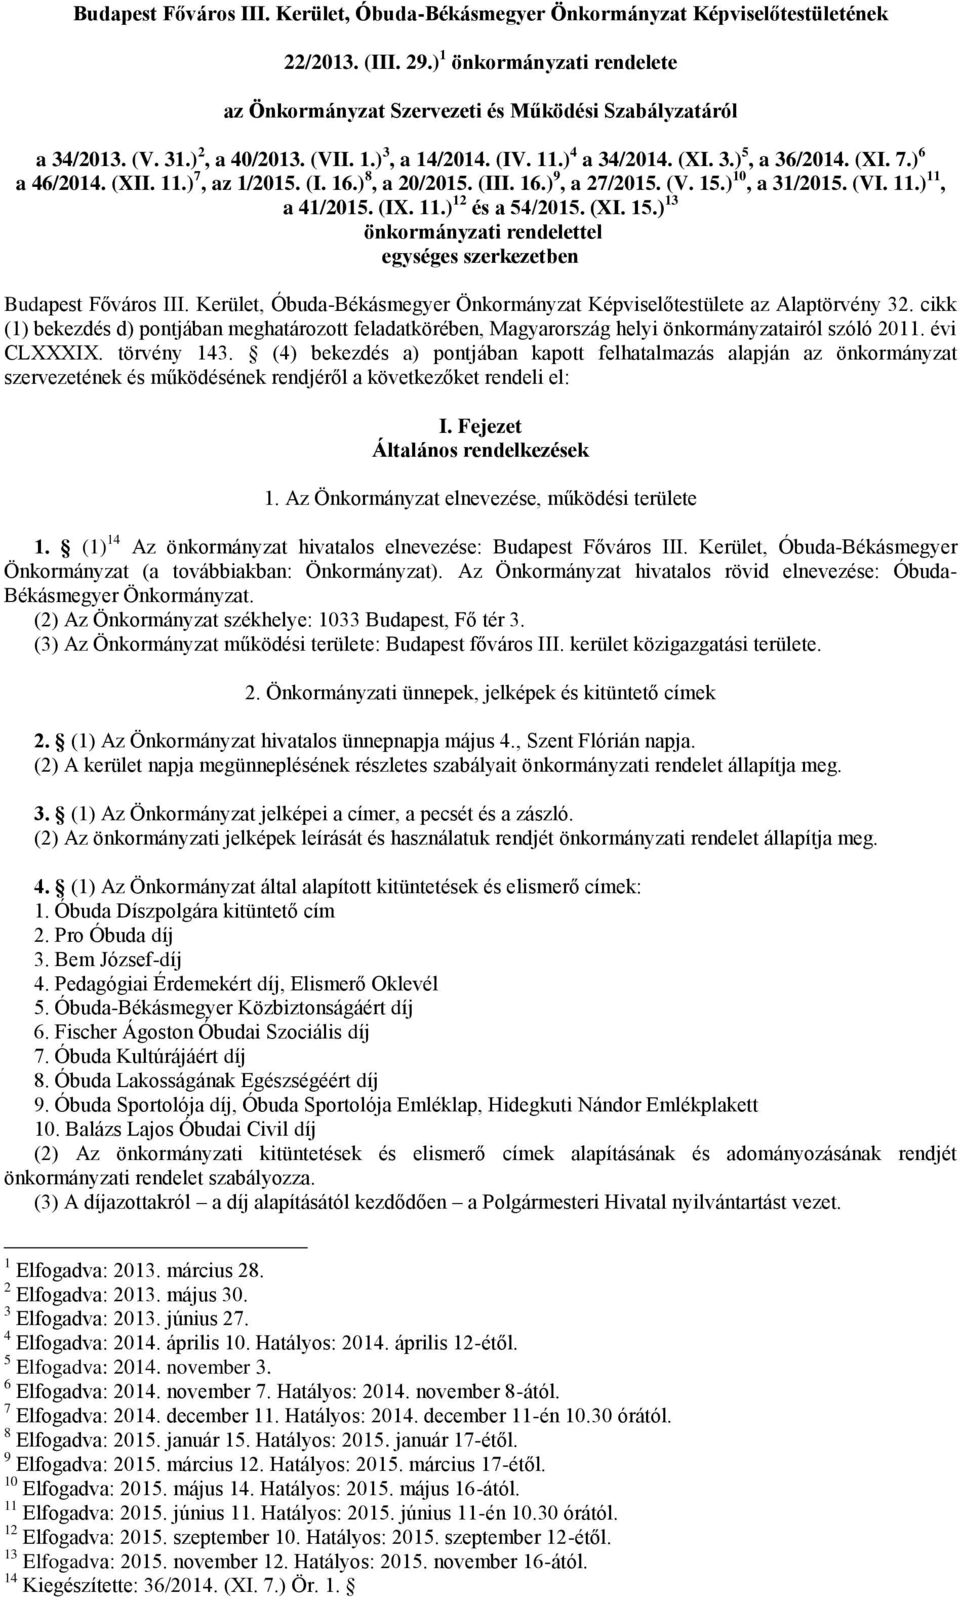 ) 10, a 31/2015. (VI. 11.) 11, a 41/2015. (IX. 11.) 12 és a 54/2015. (XI. 15.) 13 önkormányzati rendelettel egységes szerkezetben Budapest Főváros III.